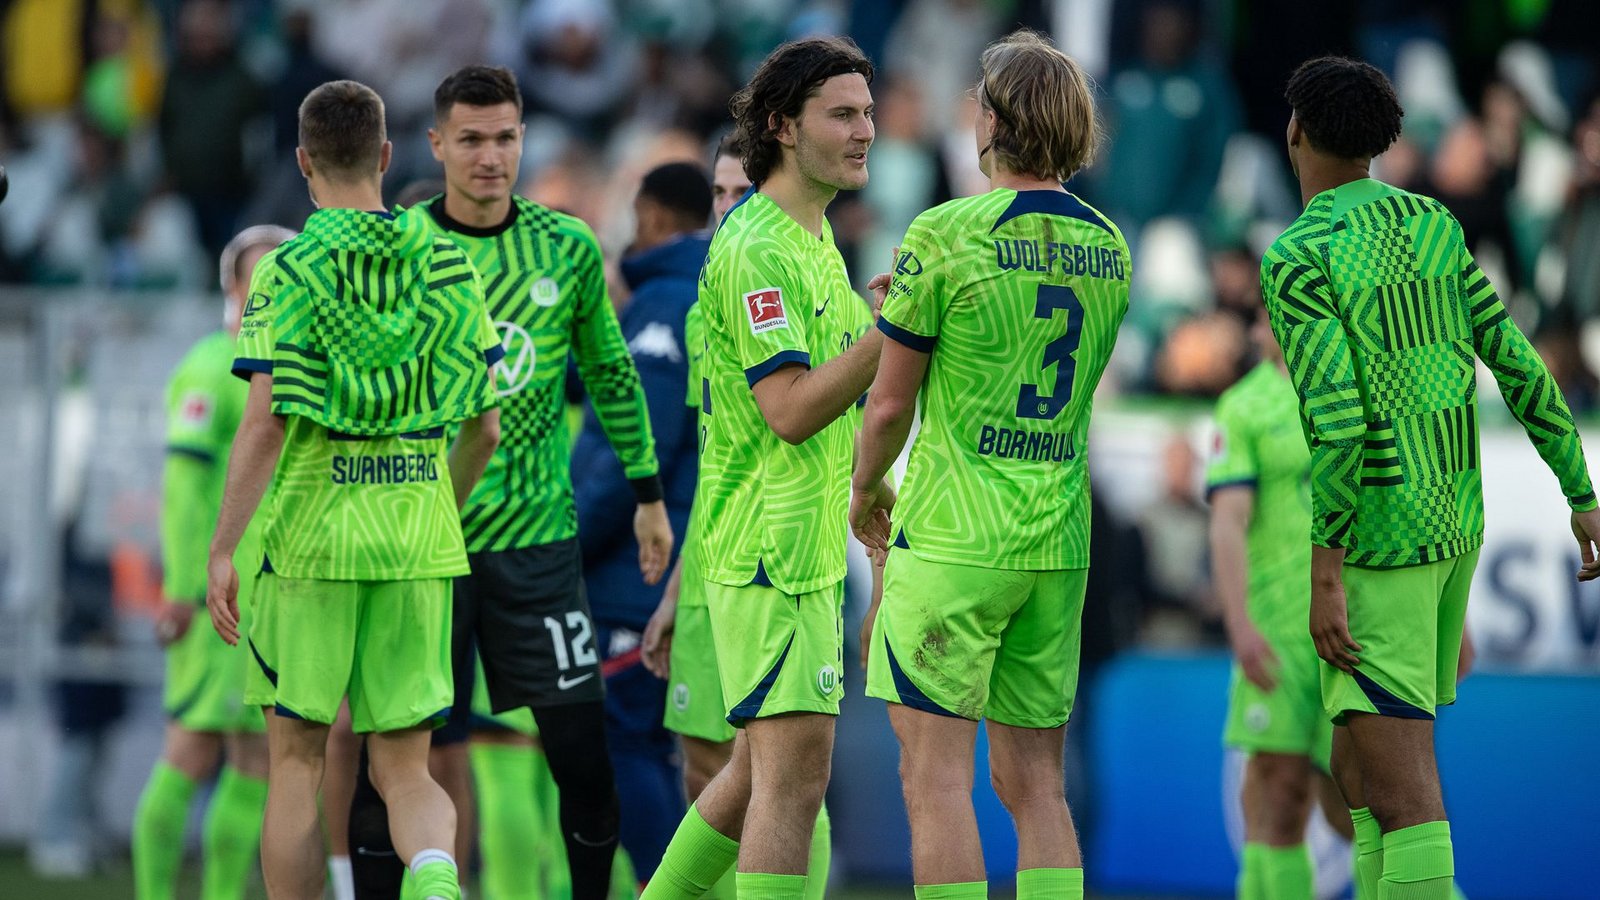 Der VfL Wolfsburg gewann sehr deutlich.Foto: dpa/Swen Pförtner